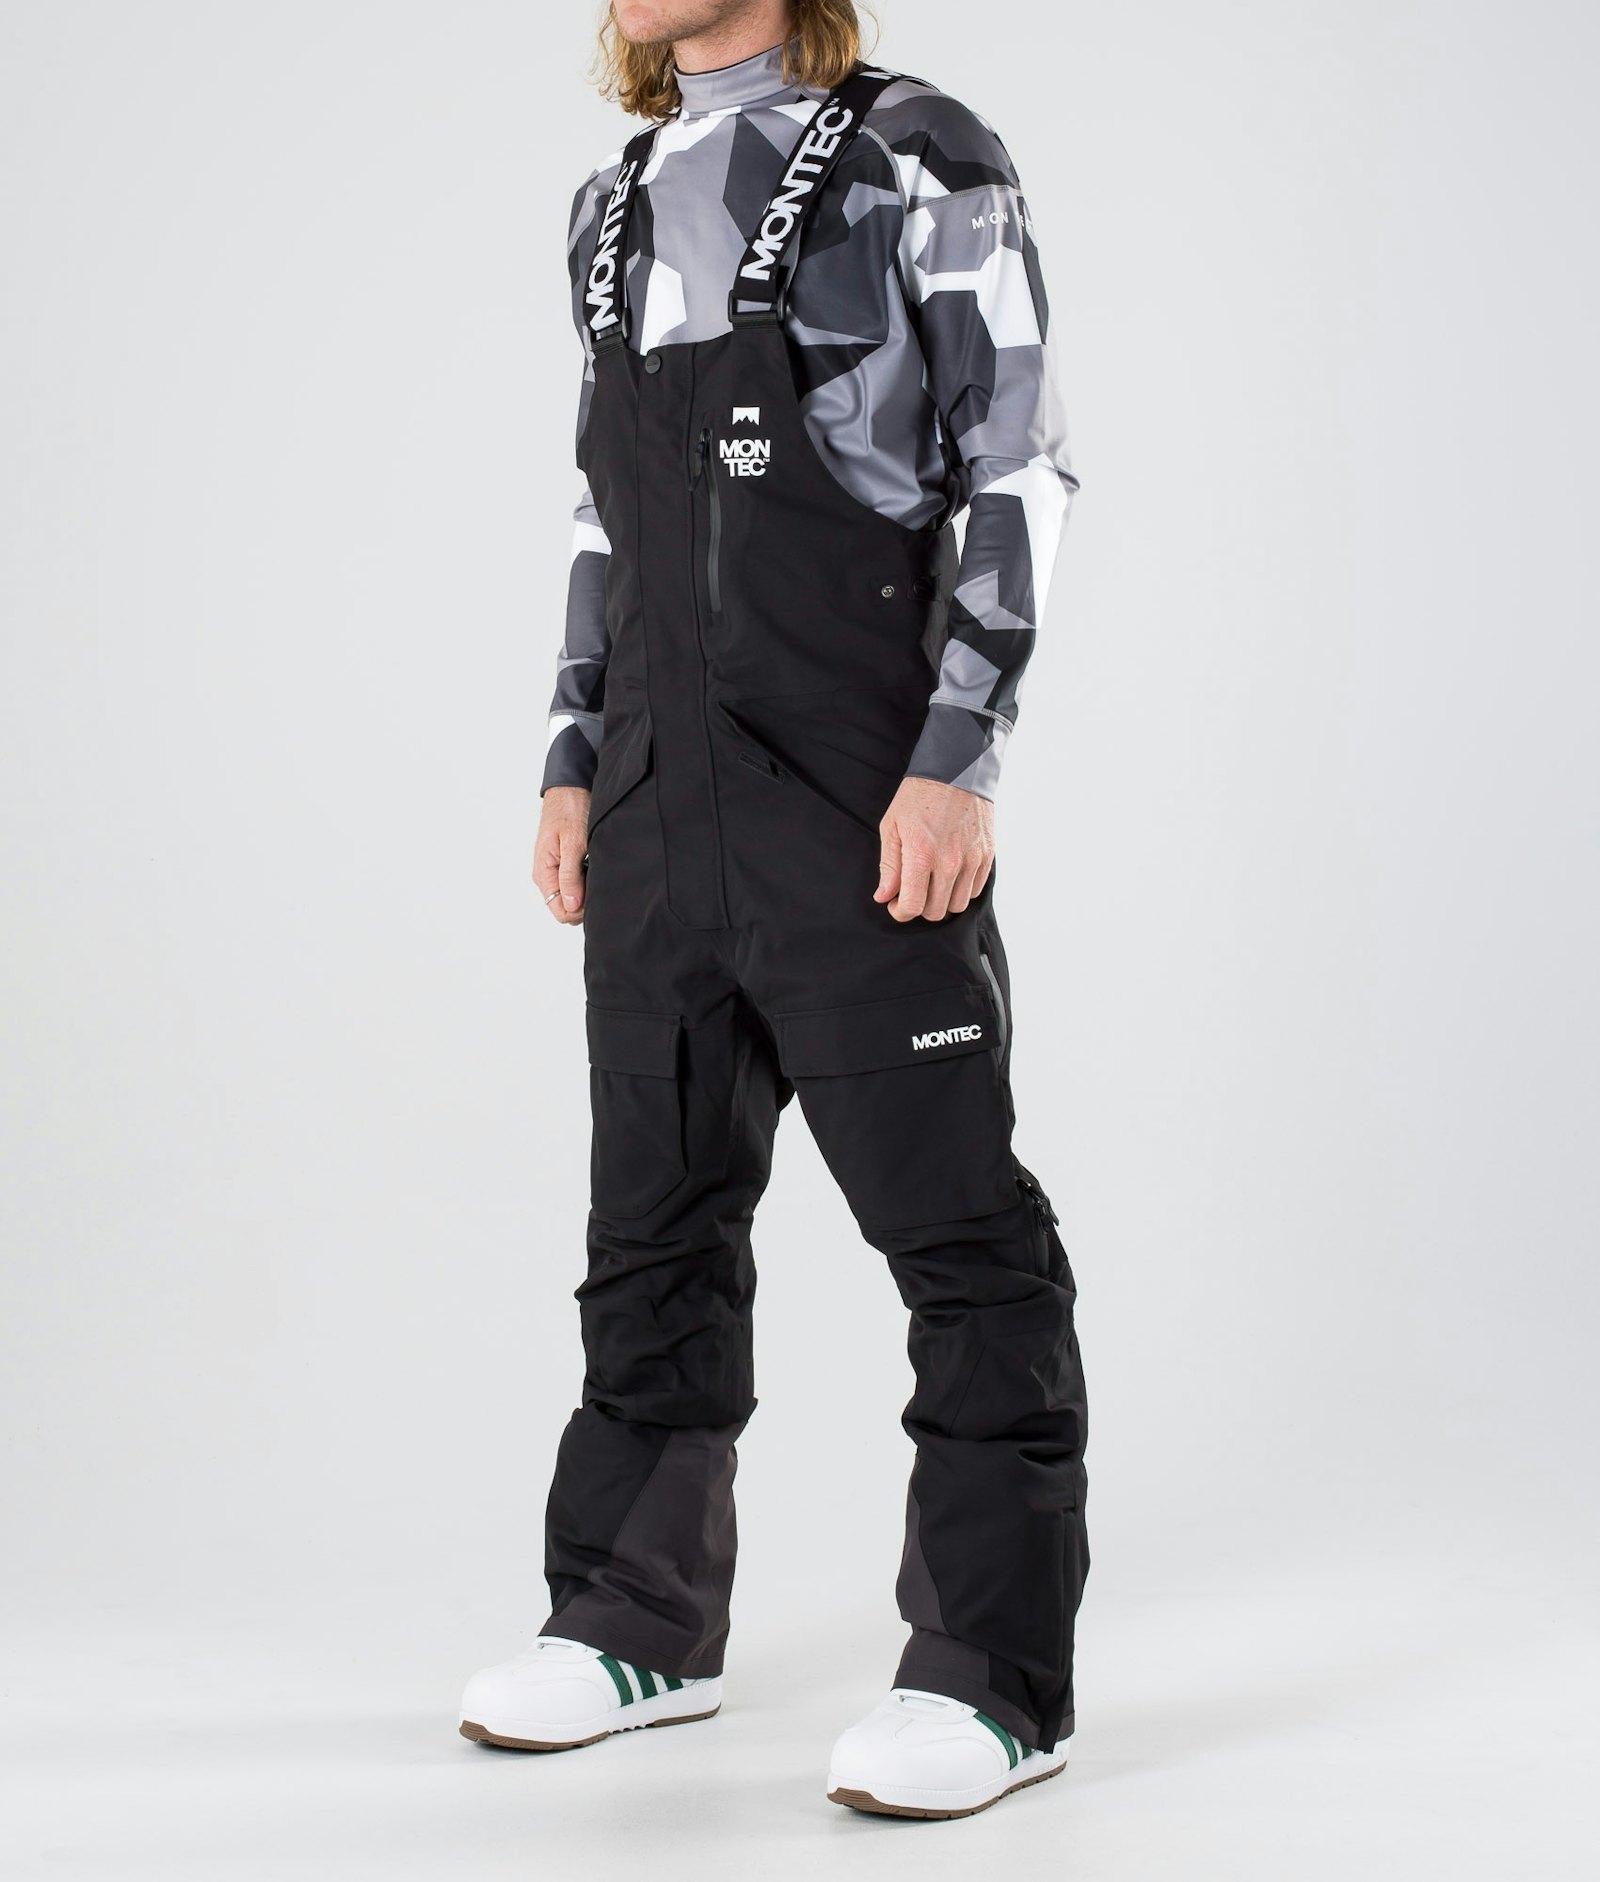 Fawk 2019 Kalhoty na Snowboard Pánské Black